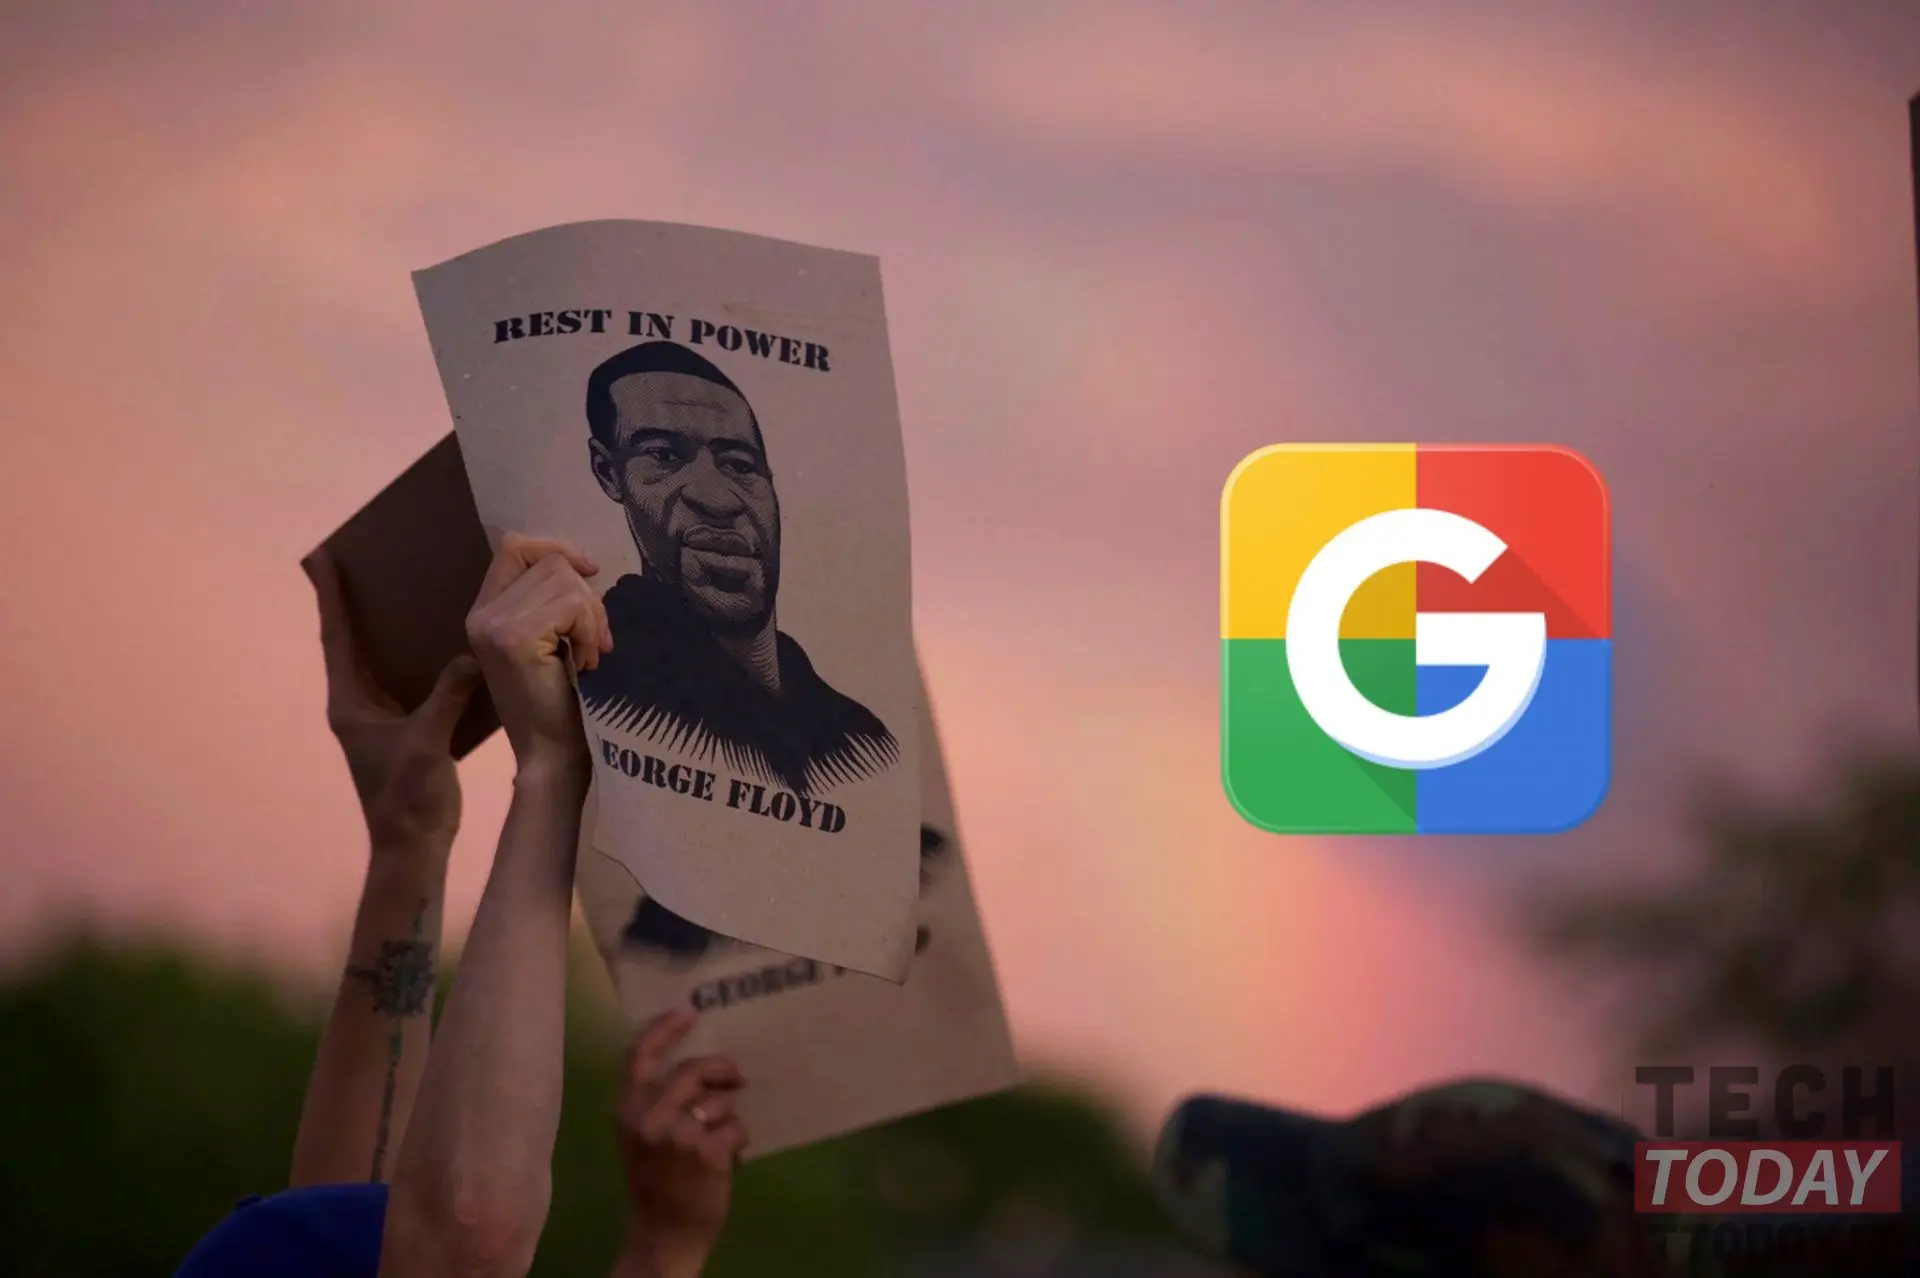 inakusahan ng google ng rasismo